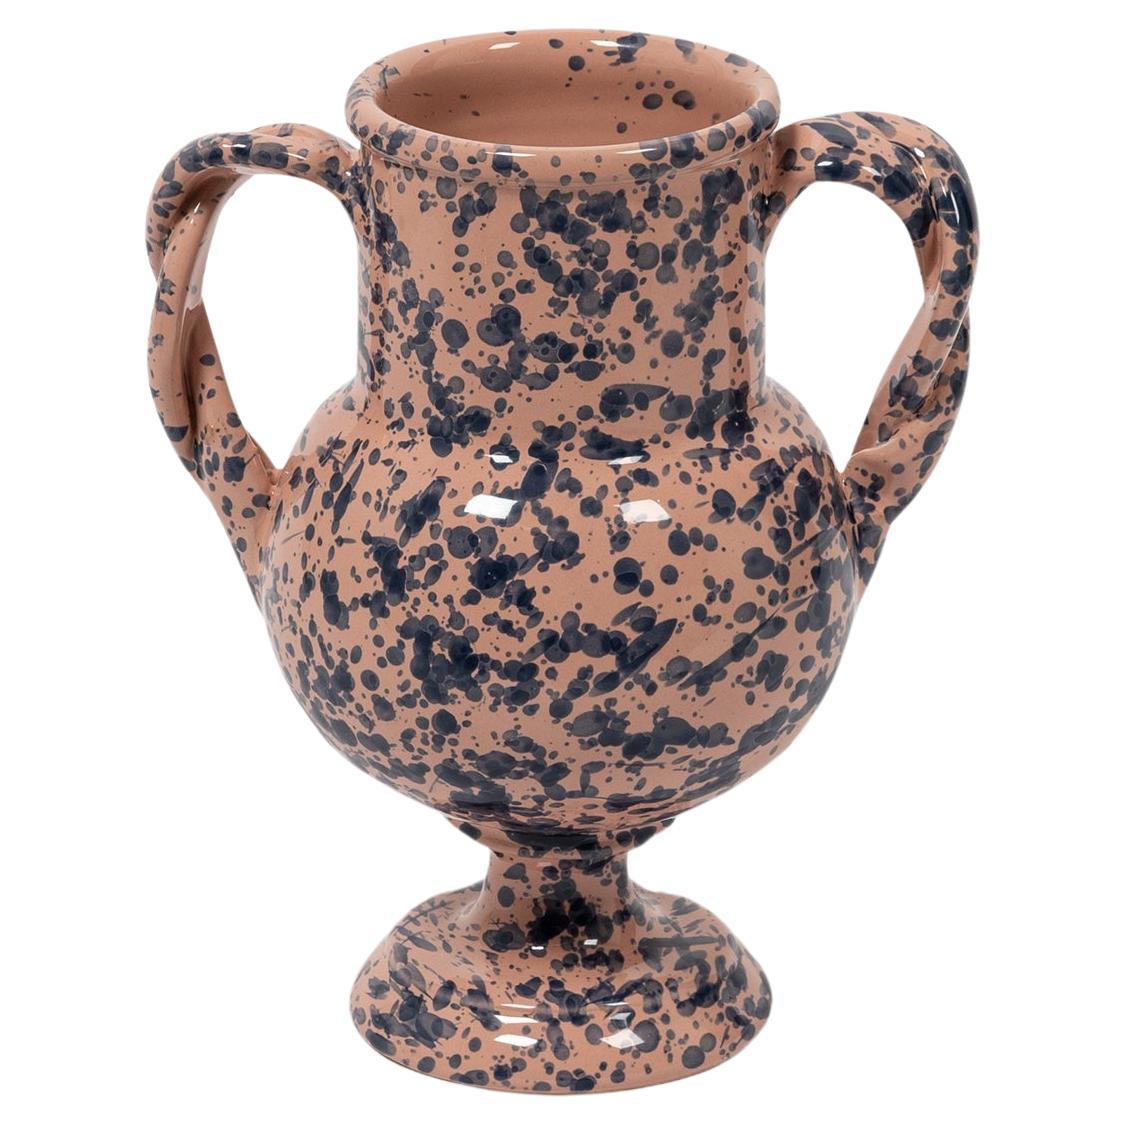 Splatter Vase, ceramic, greek urn inspired, Pink and Blue